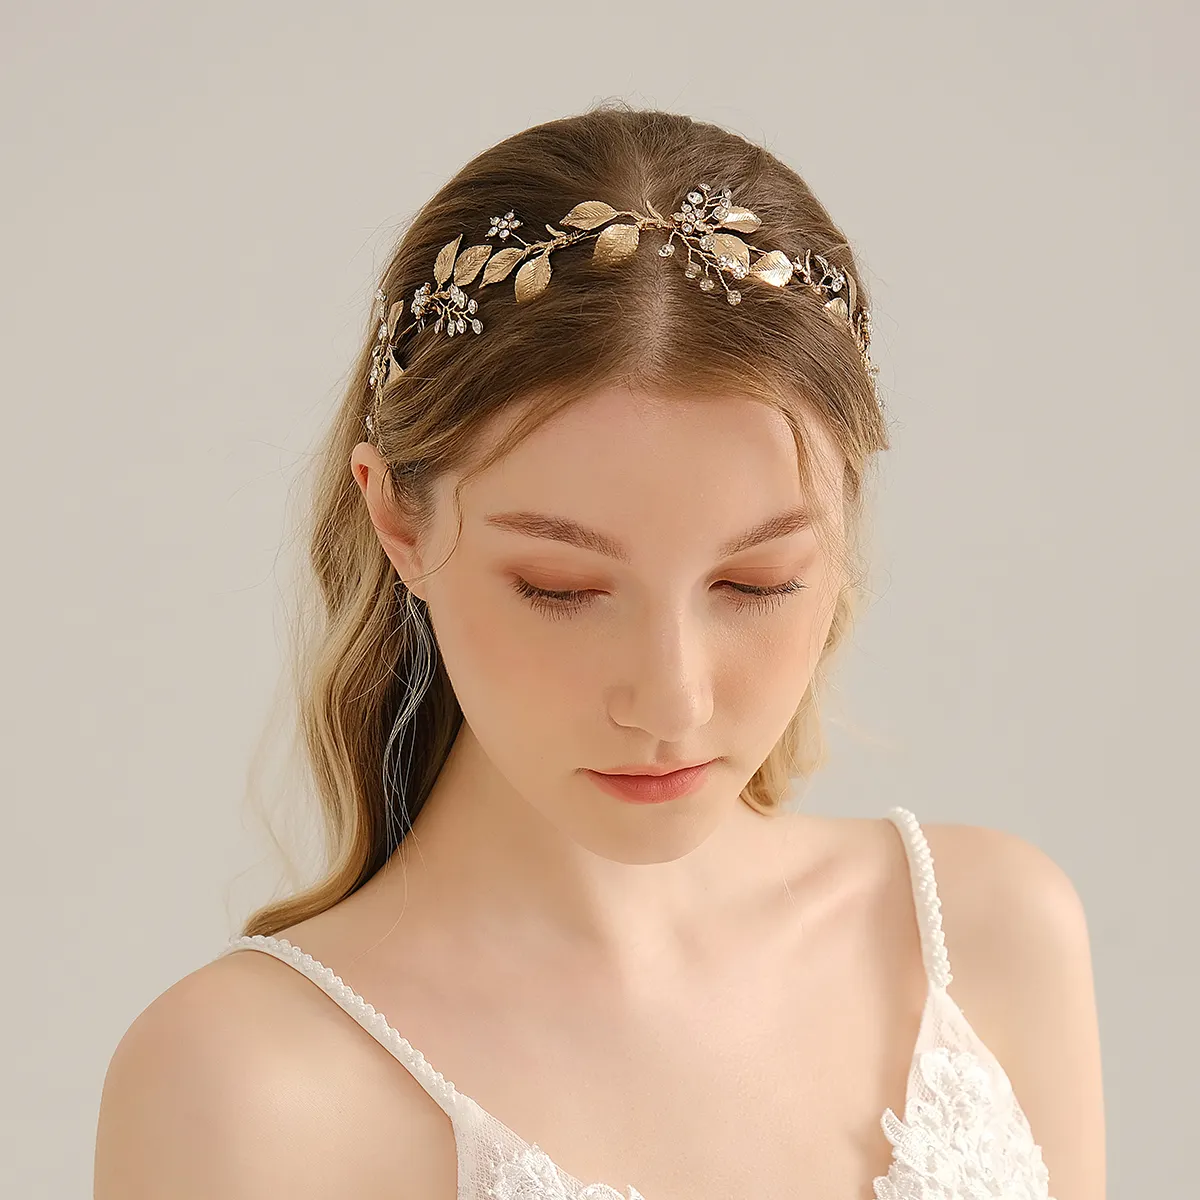 Antik altın Retro kişilik kız saç aksesuarları şerit gelin Rhinestone Hairband düğün elmas alaşım şapkalar Tiara